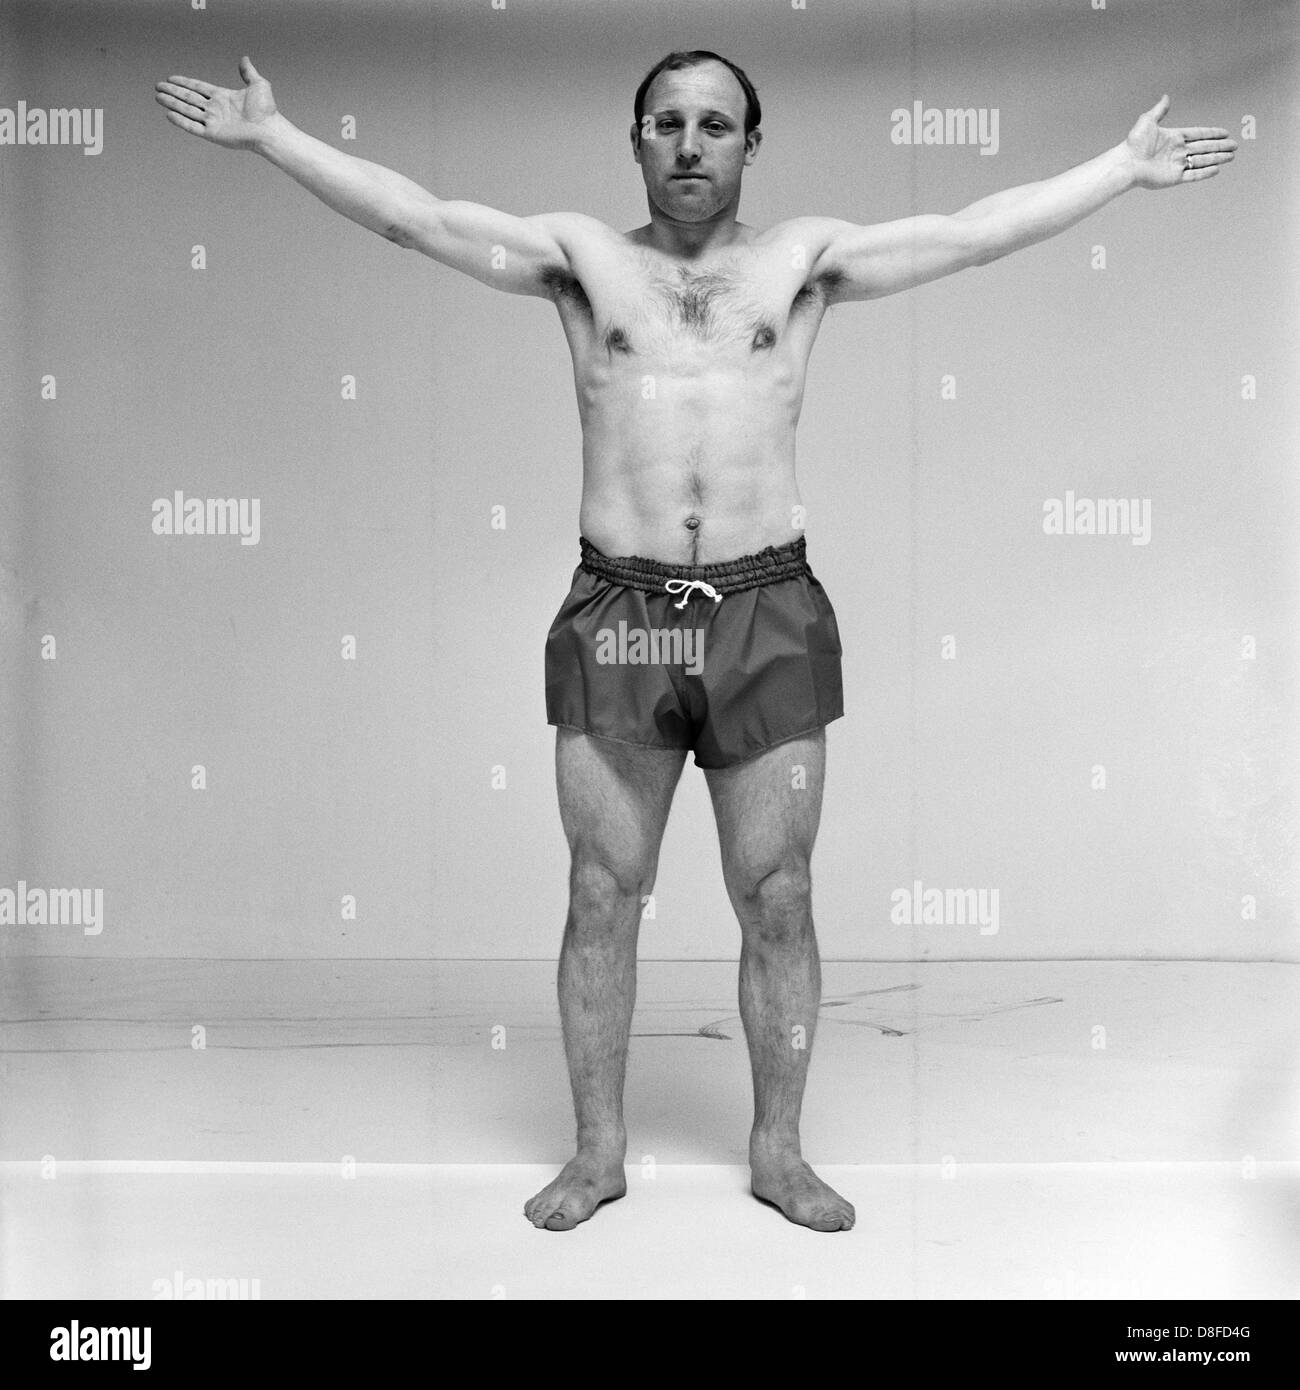 Fußballspieler Uwe Seeler trägt Shorts und breitet seine Arme in einem Fotostudio (schwarz-weiß-Fotografie). Stockfoto